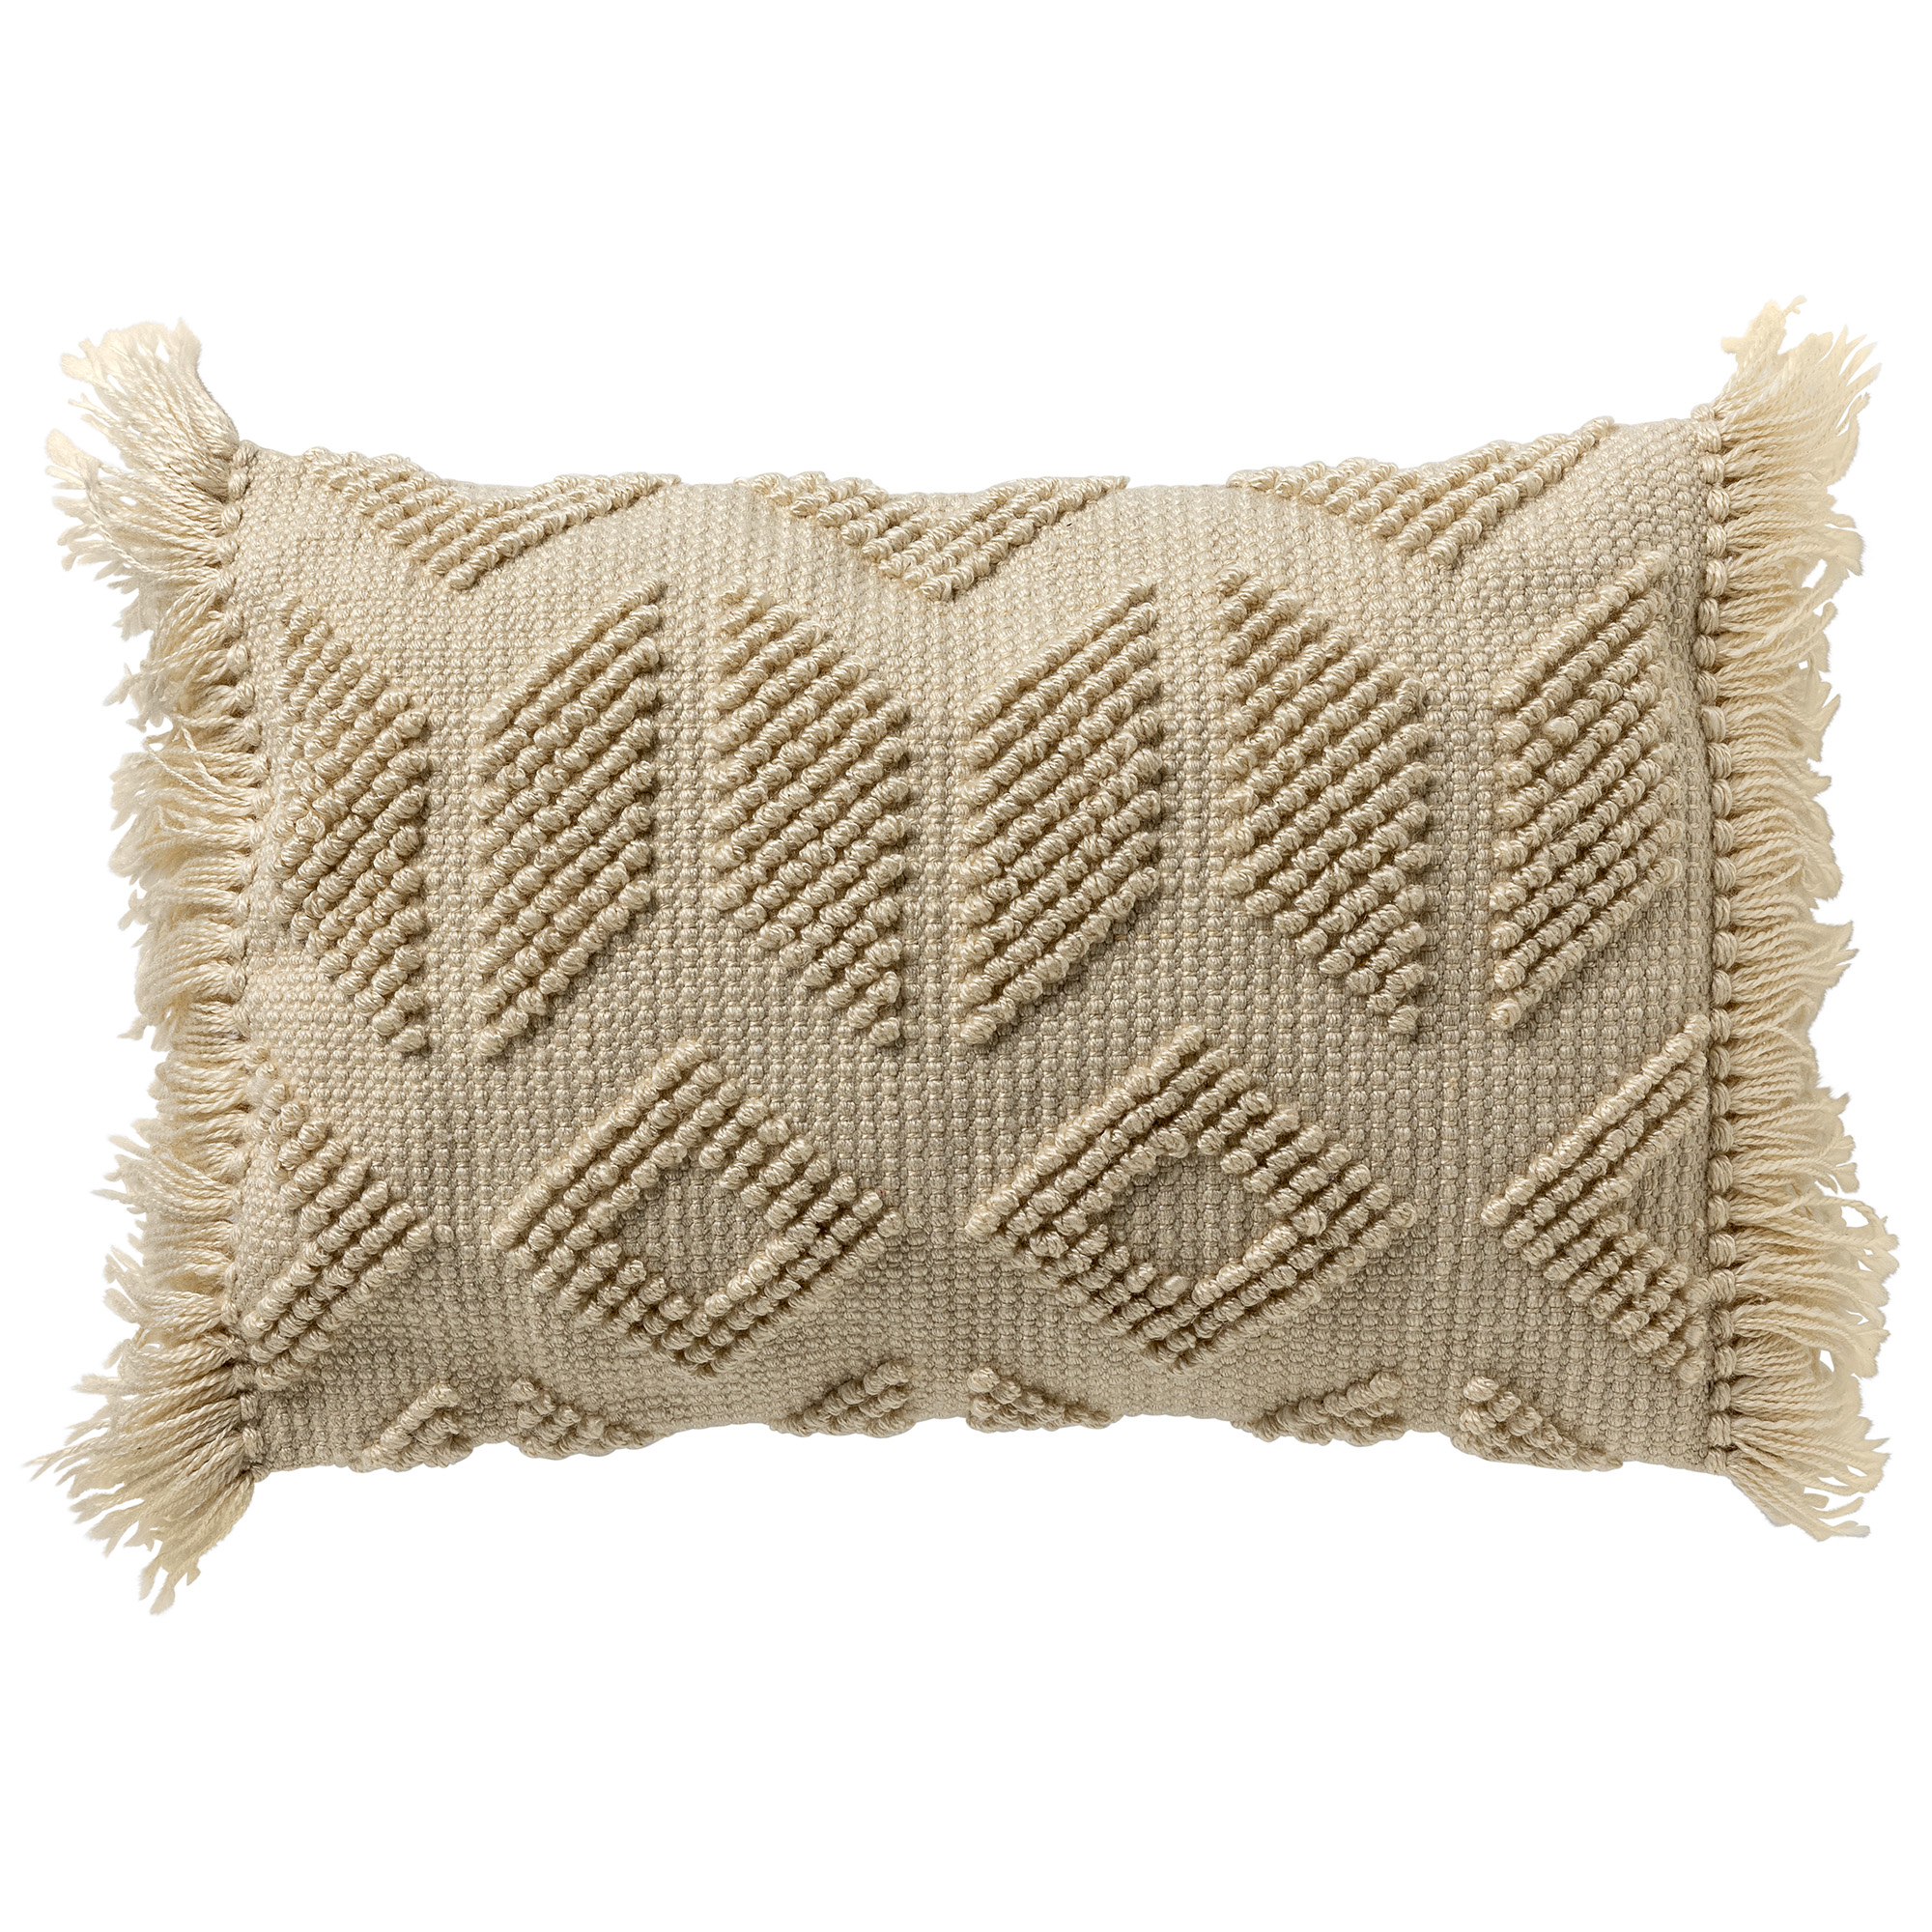 ODIN - Sierkussen 40x60 cm met kussenhoes van 90% gerecycled polyester - Eco Line collectie - Pumice Stone - beige